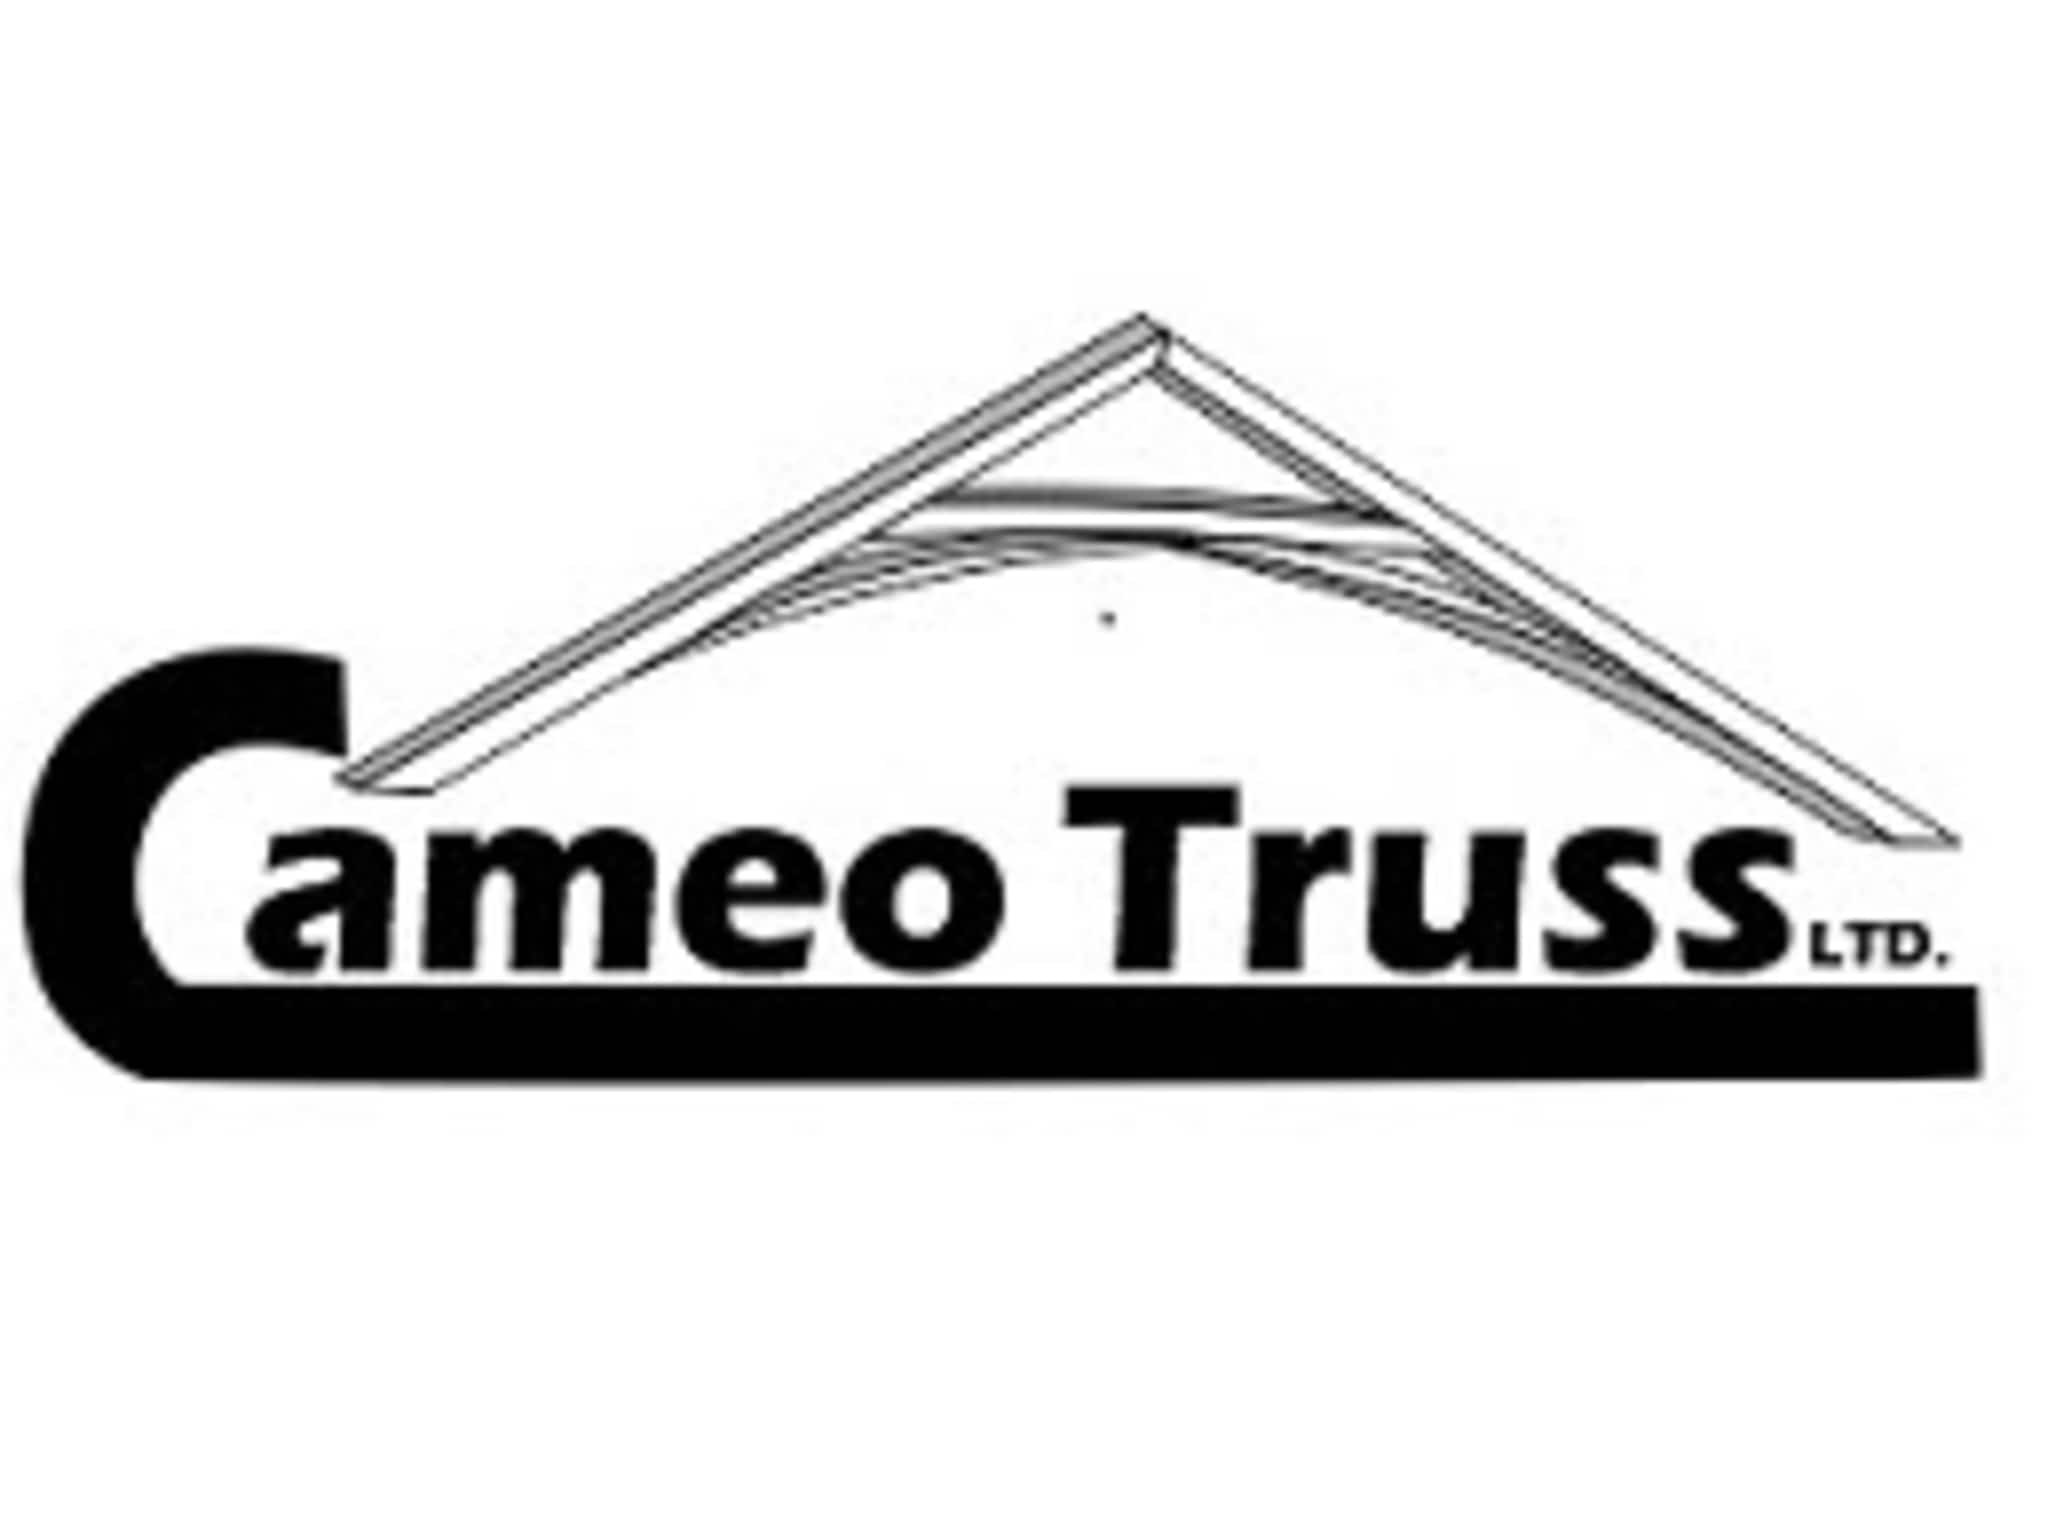 photo Cameo Truss Ltd